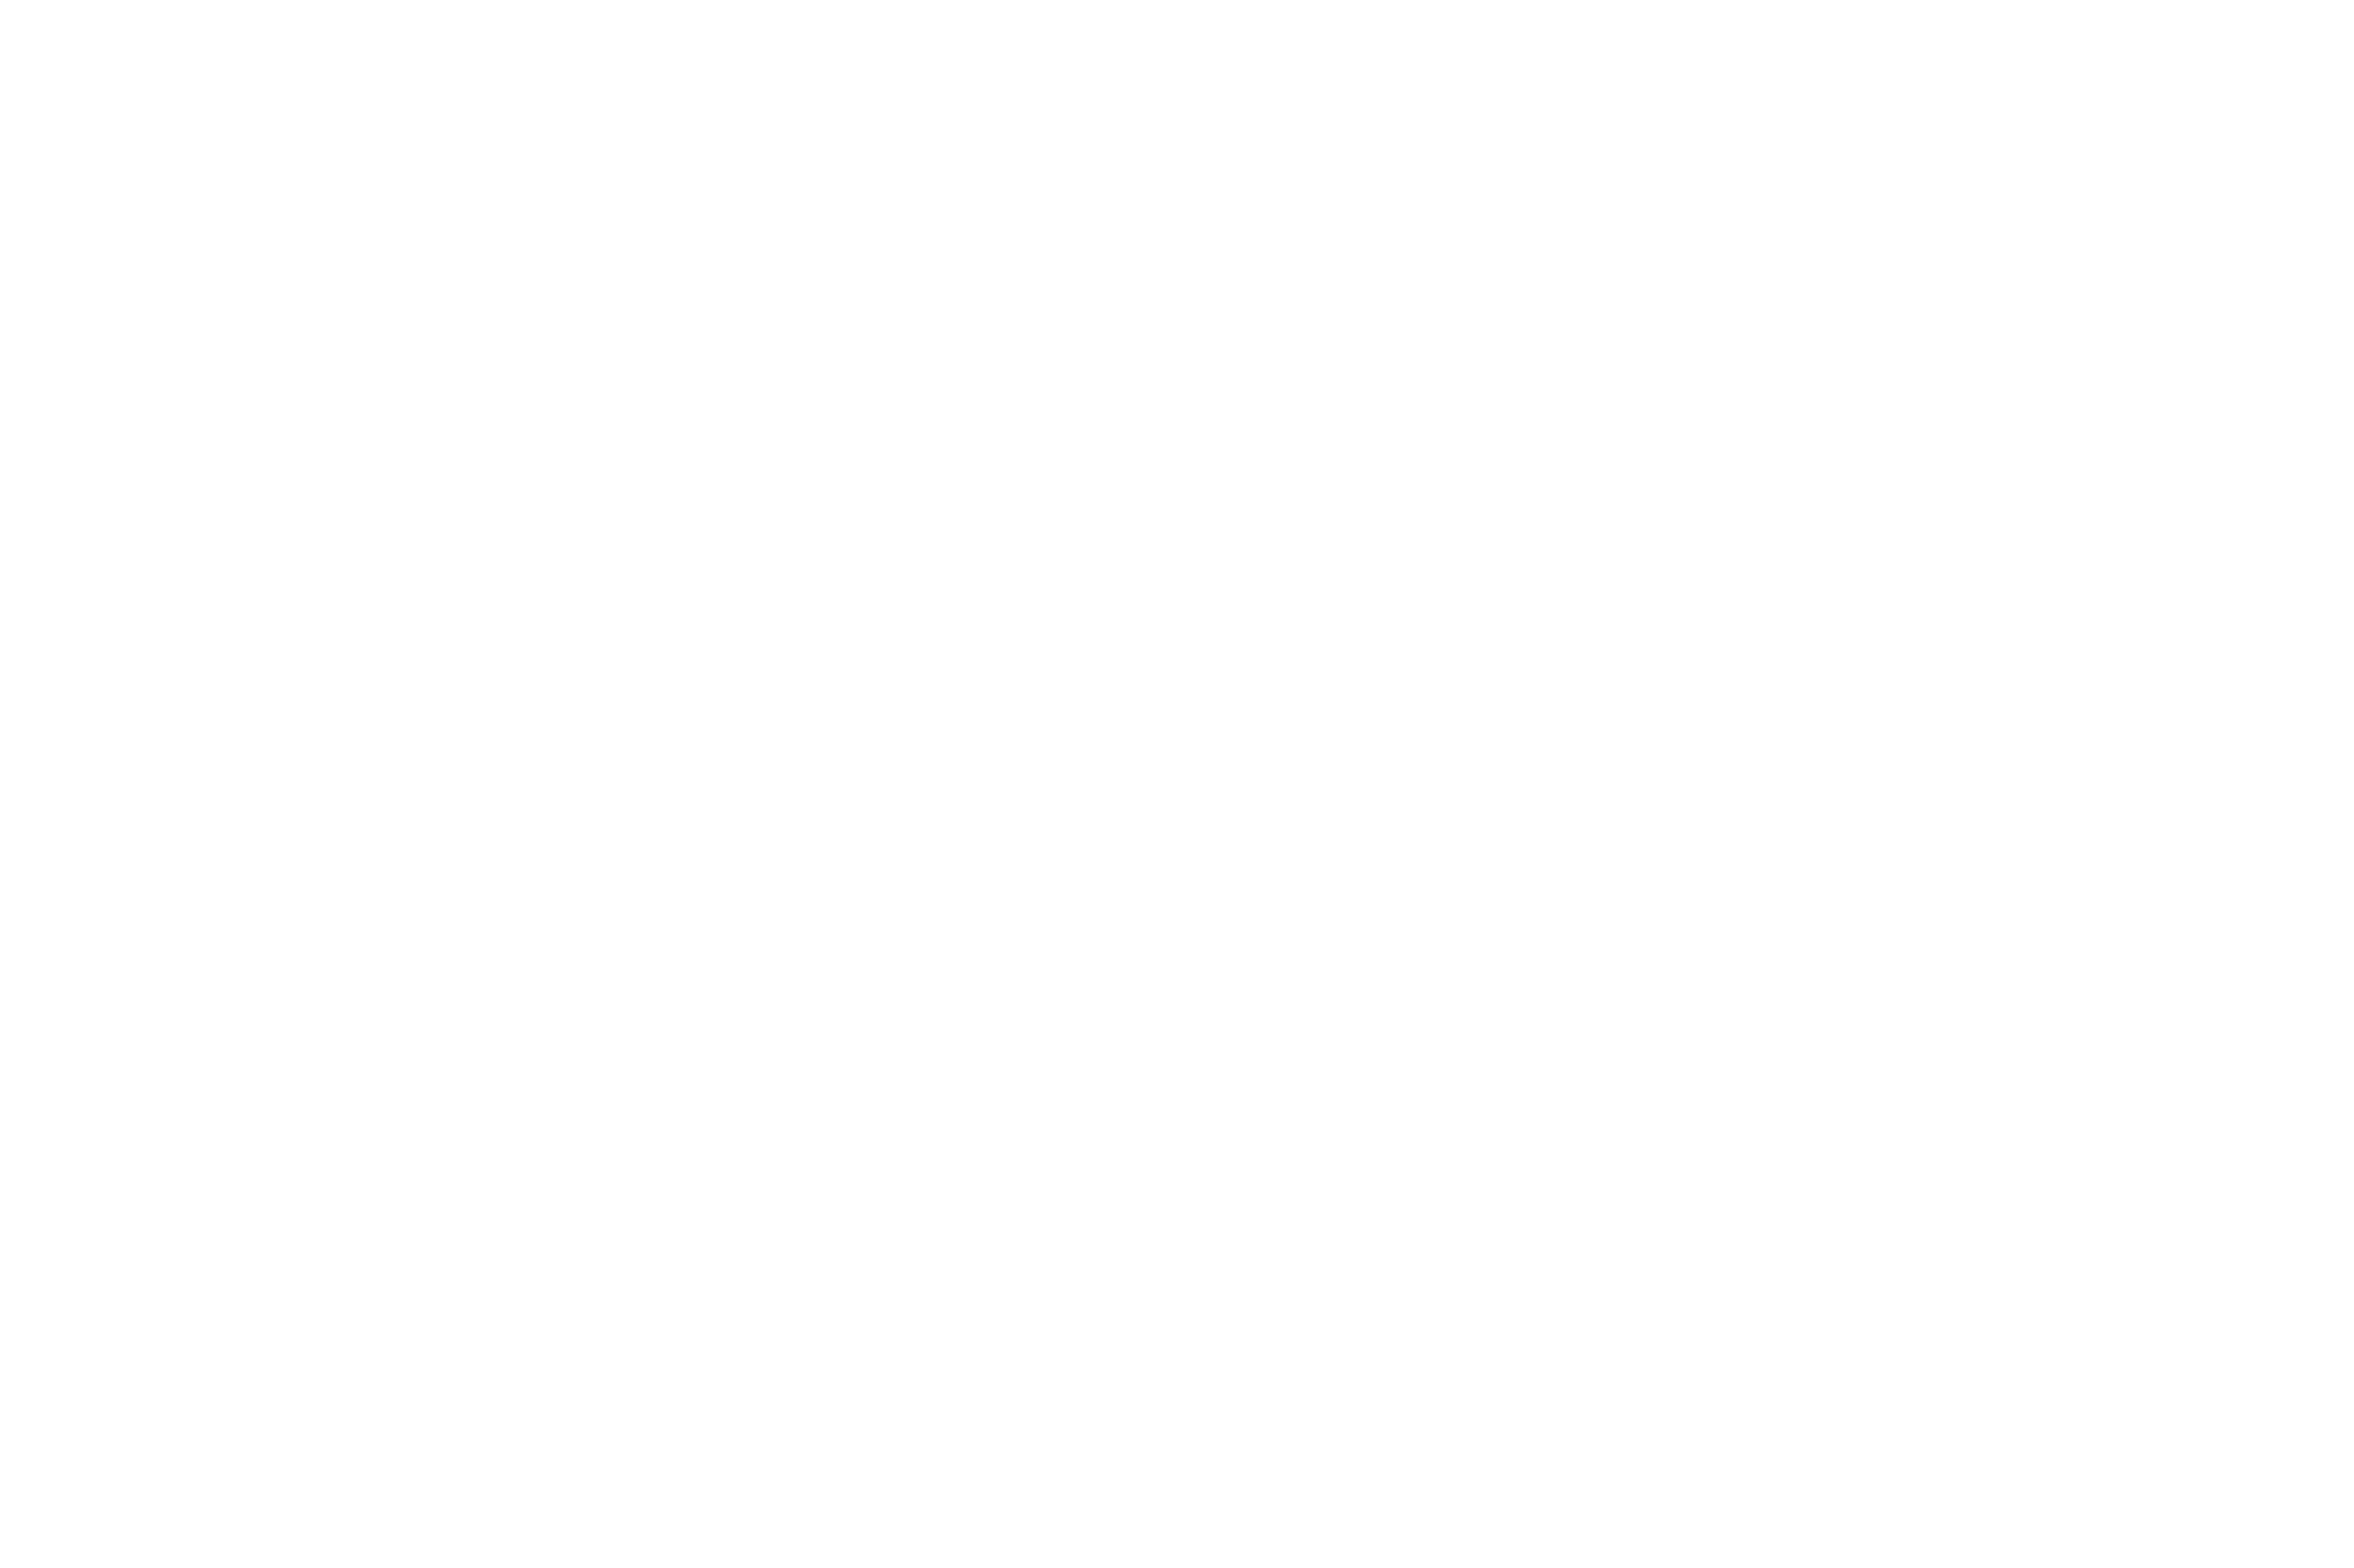 Logo Catherine